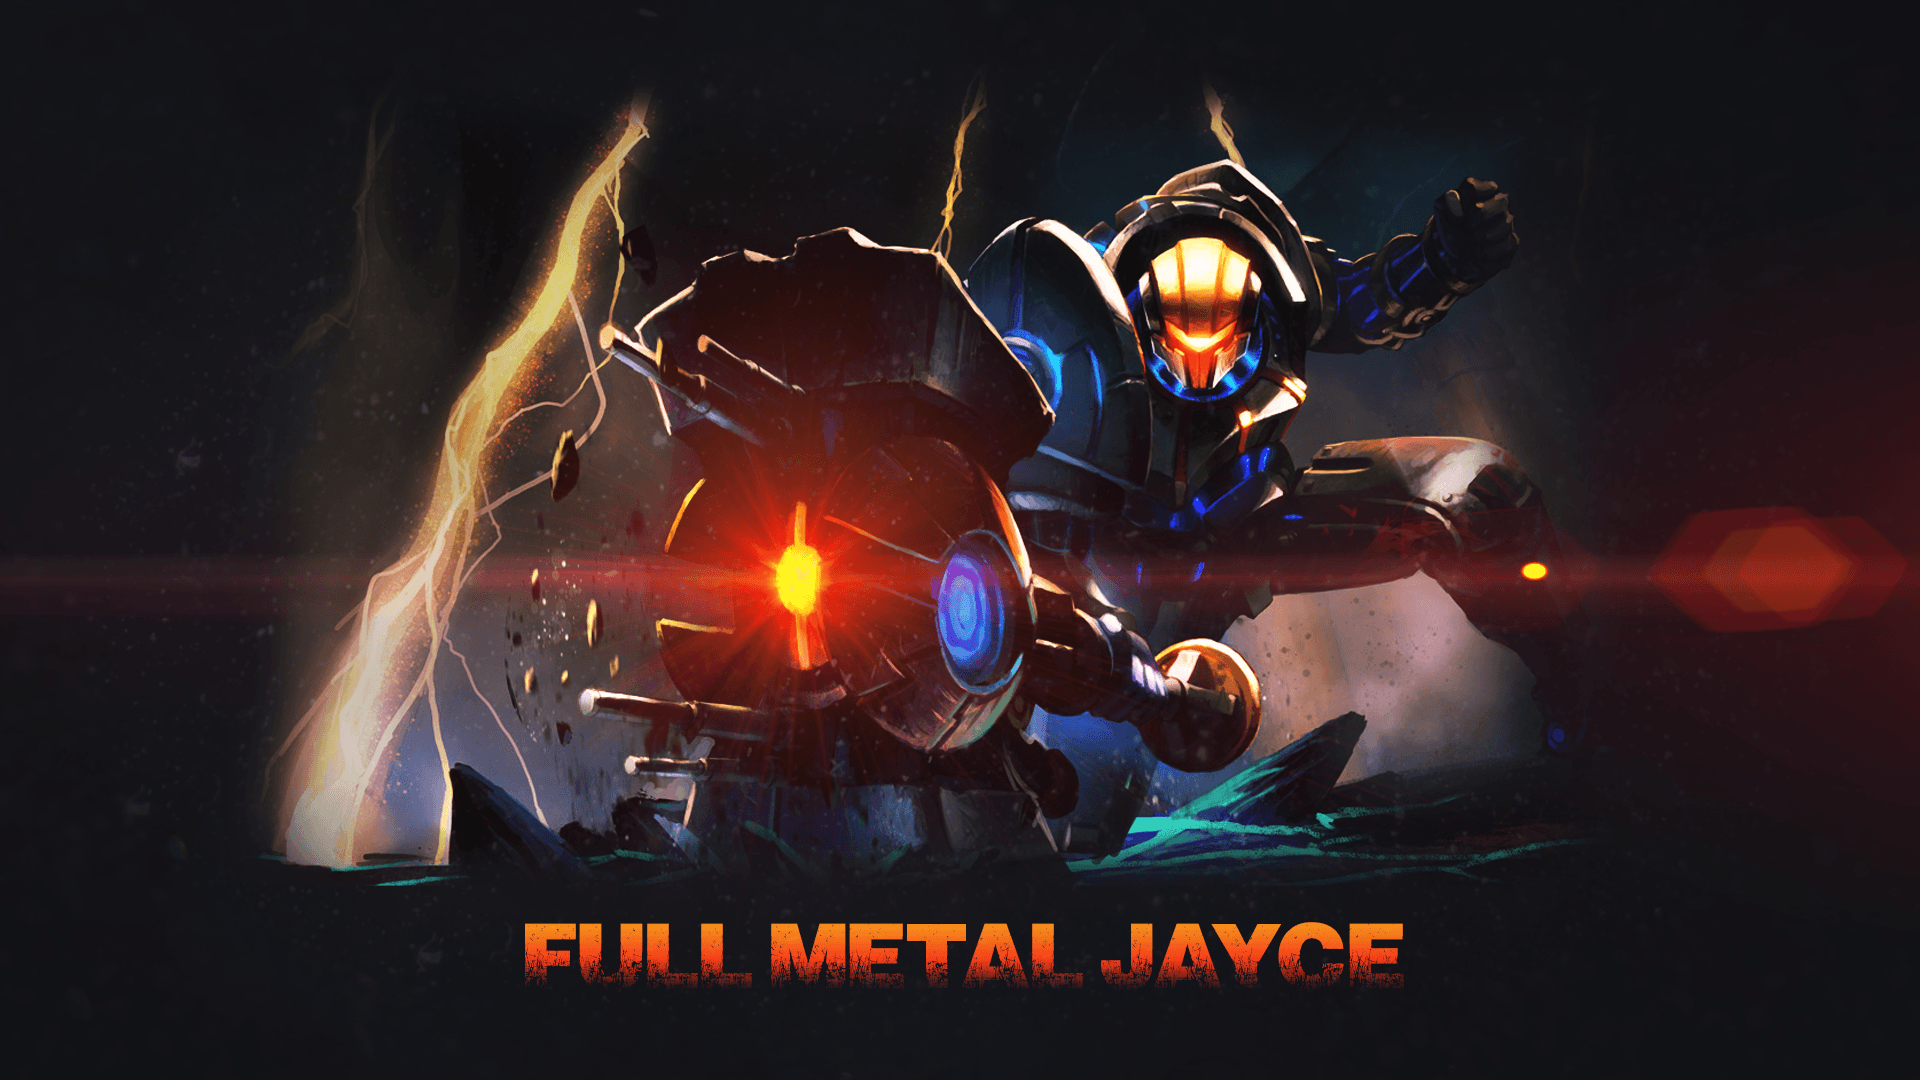 Full Metal Jayce Wallpaper 1920x1080. Fullmetal Alchemist Wallpaper